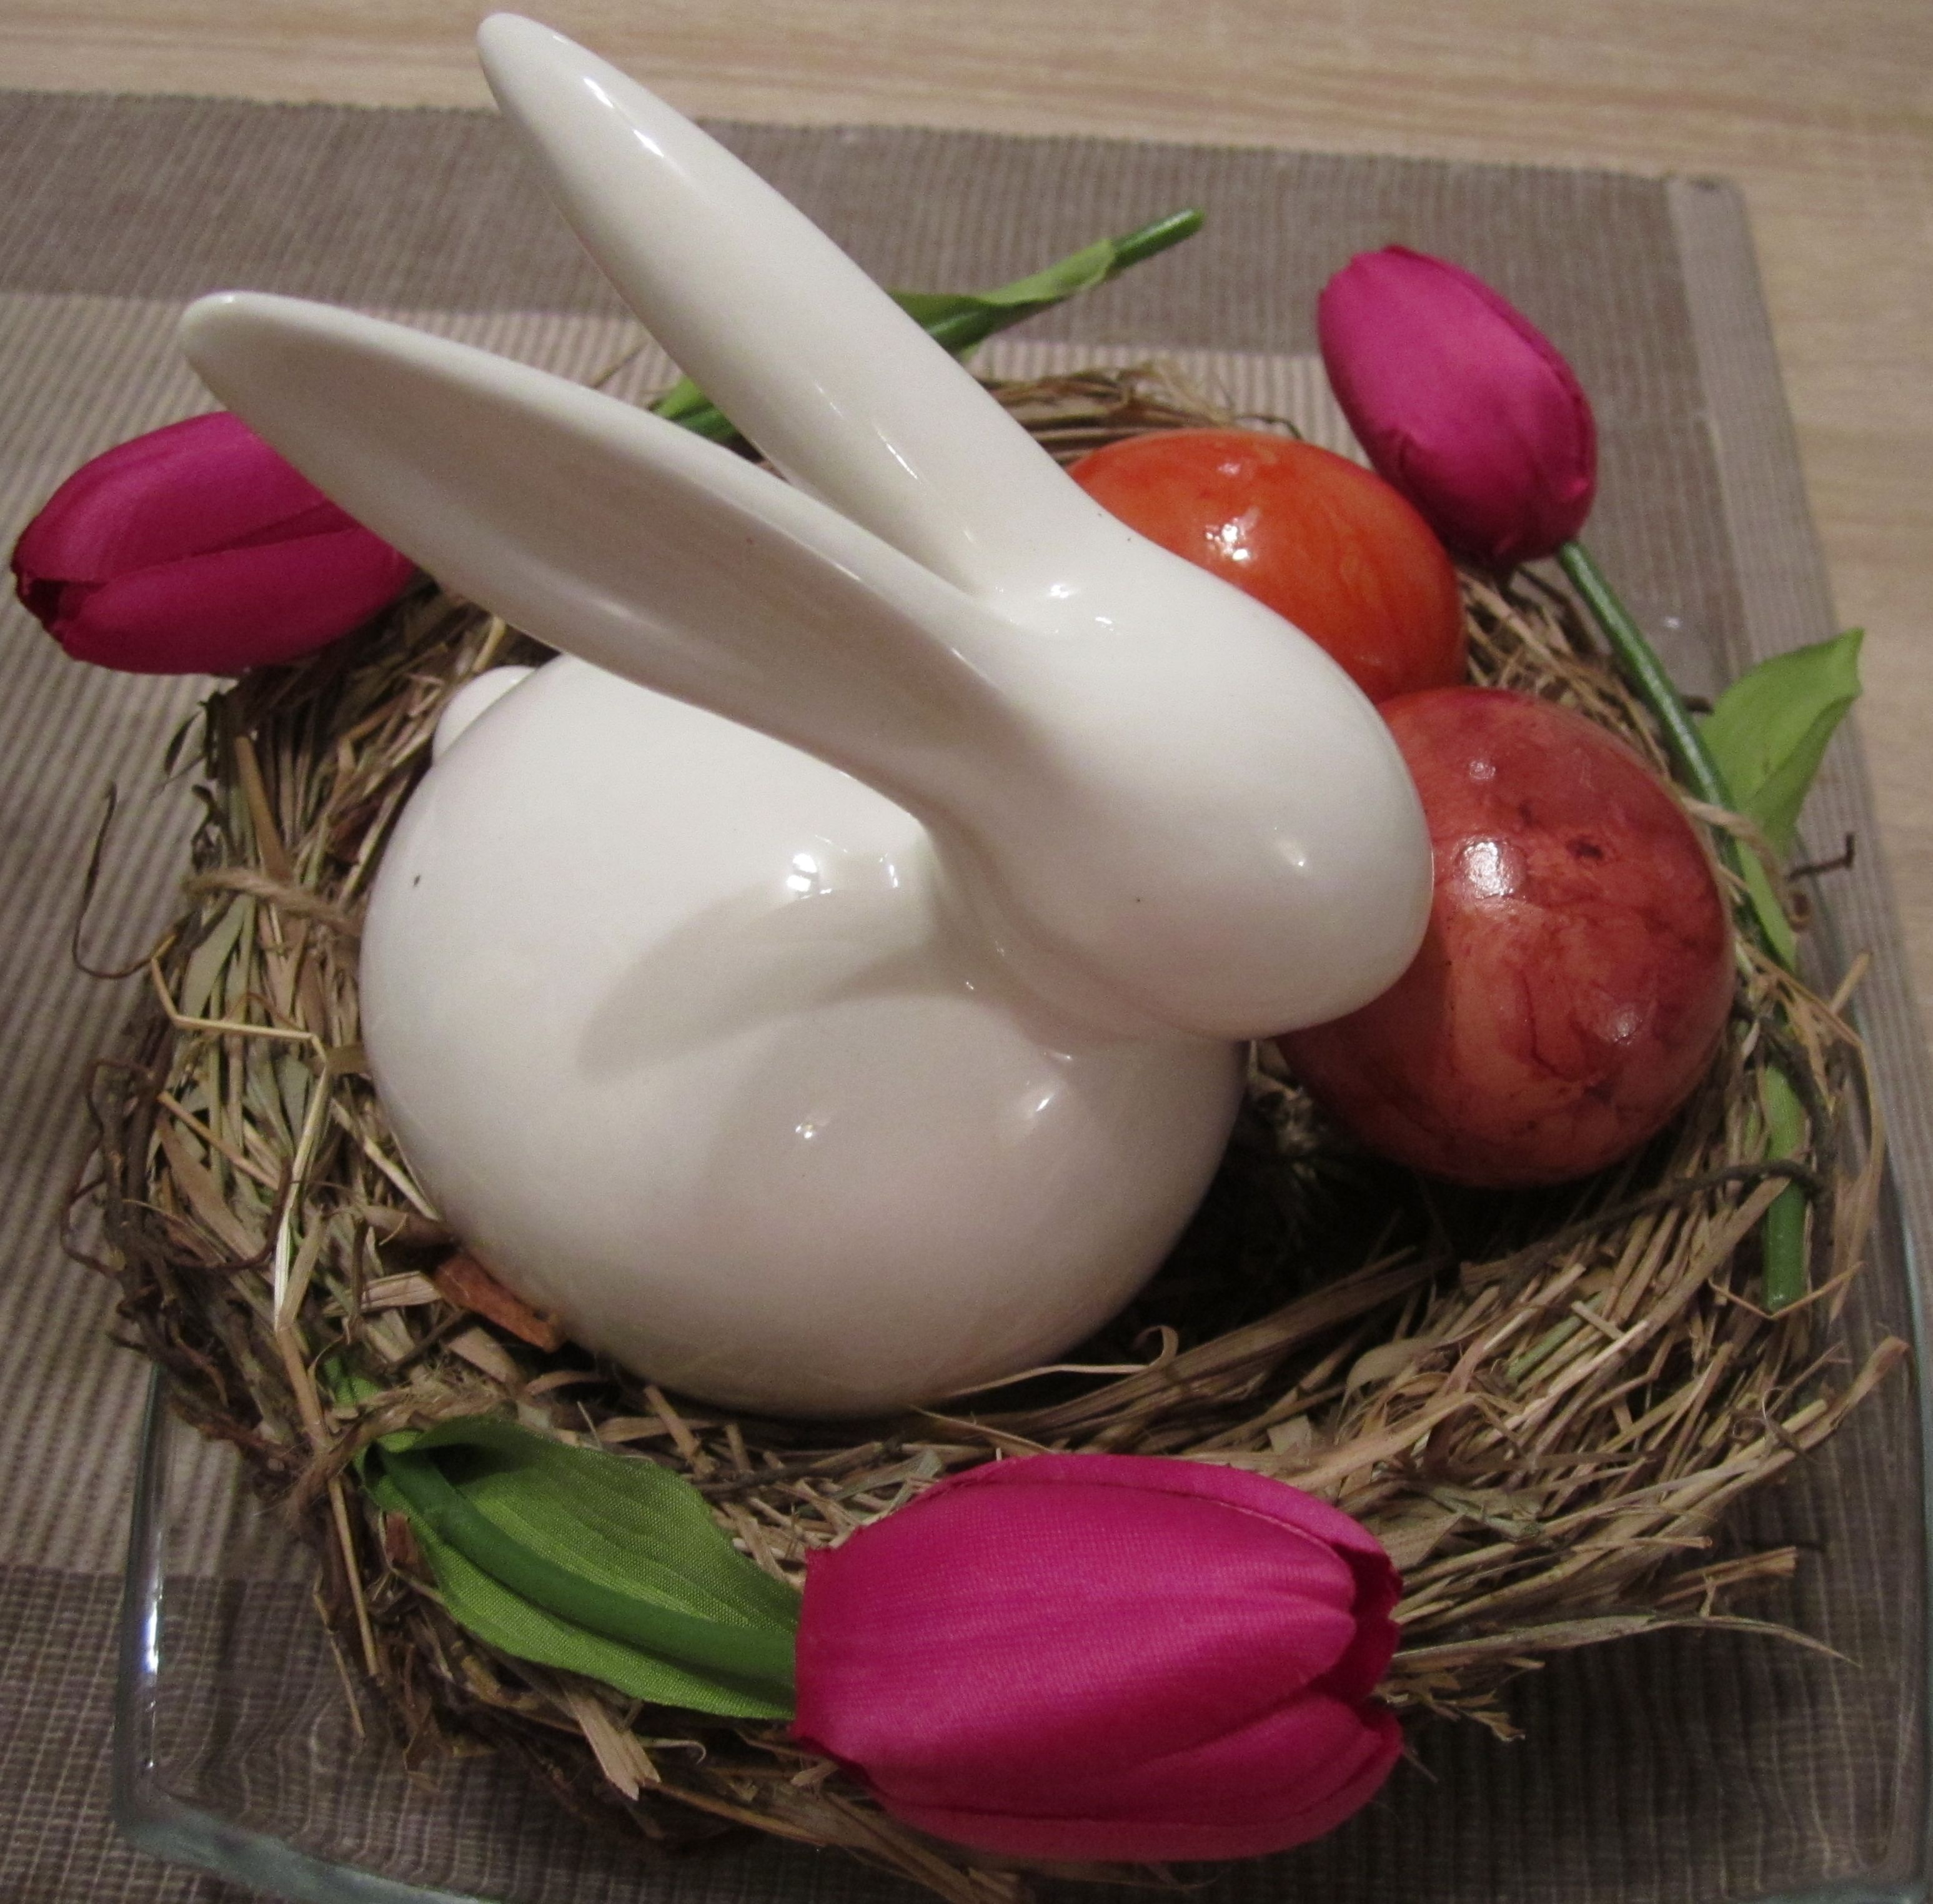 white rabbit ceramic figurine